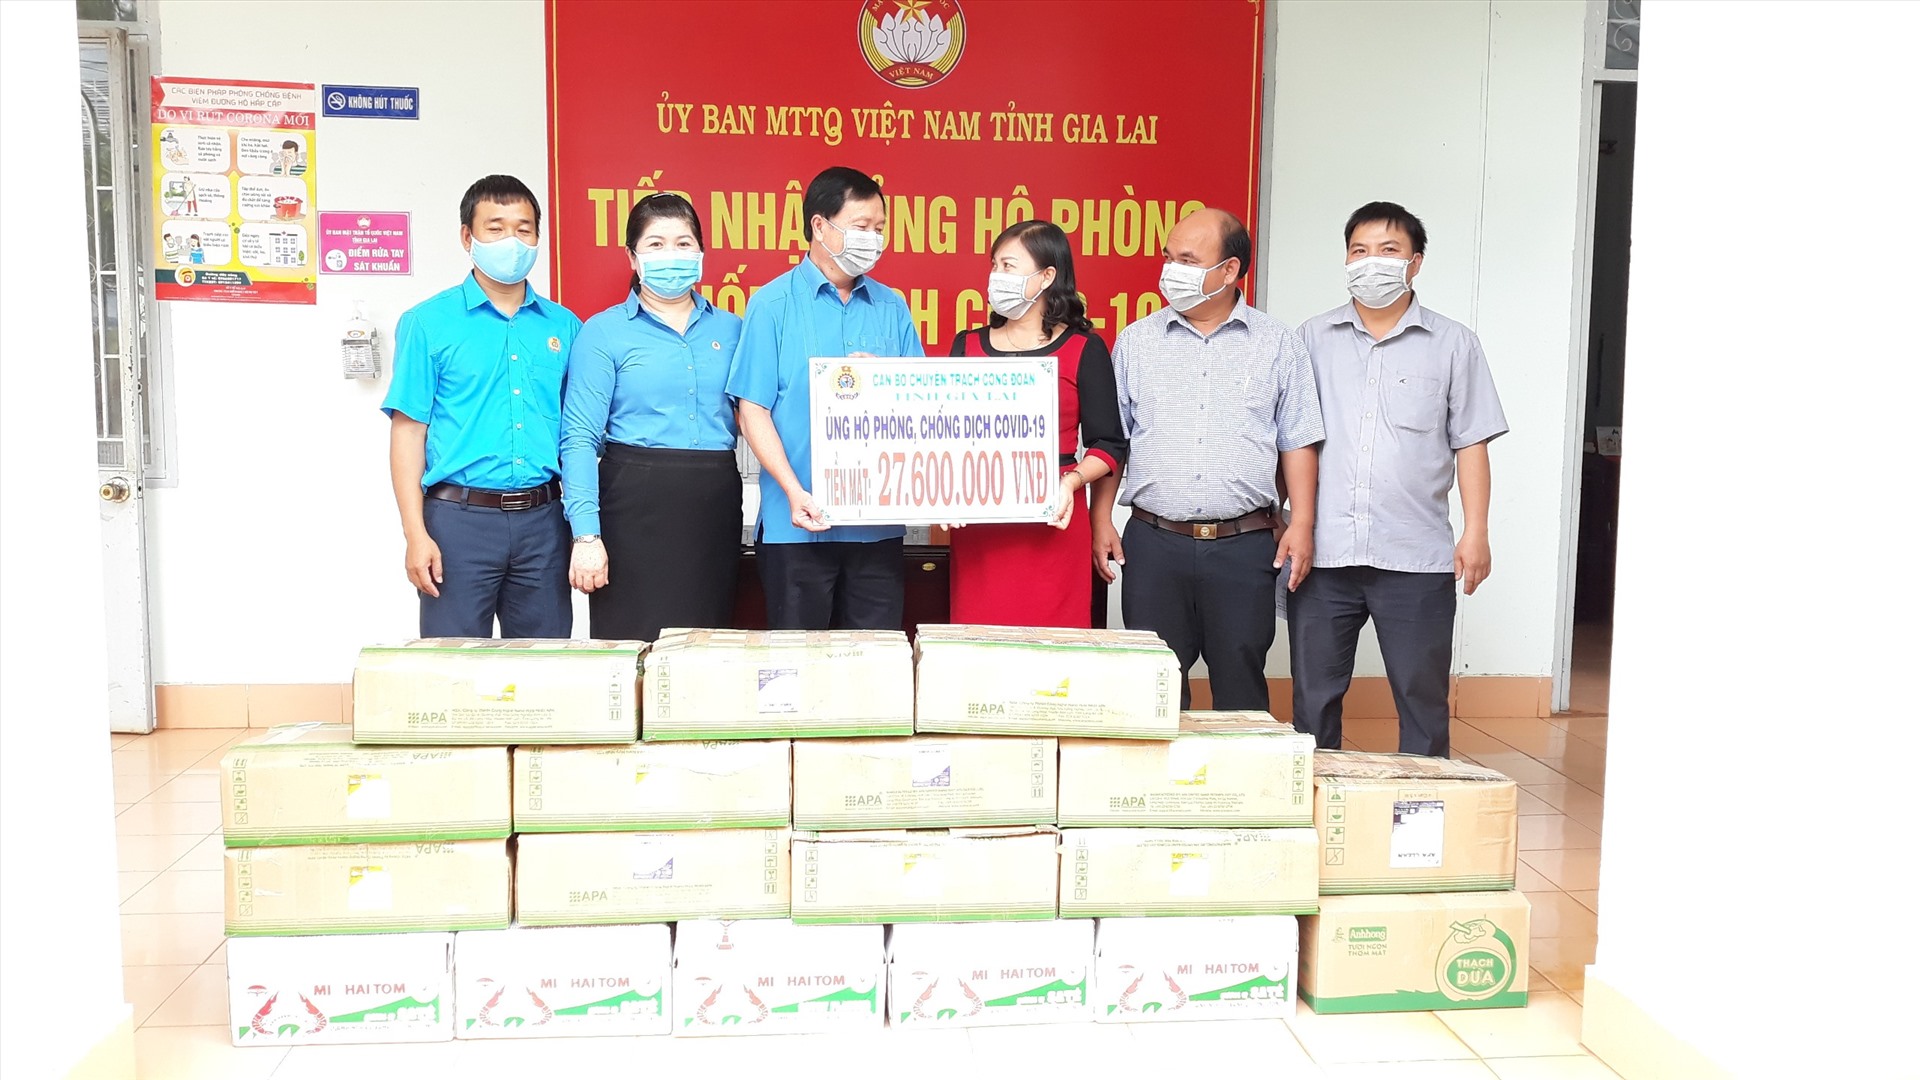 Lãnh đạo LĐLĐ tỉnh Gia Lai trao số tiền ủng hộ của anh, chị em cán bộ, ĐVCĐ đến đại diện Uỷ ban MTTQ Việt Nam tỉnh.